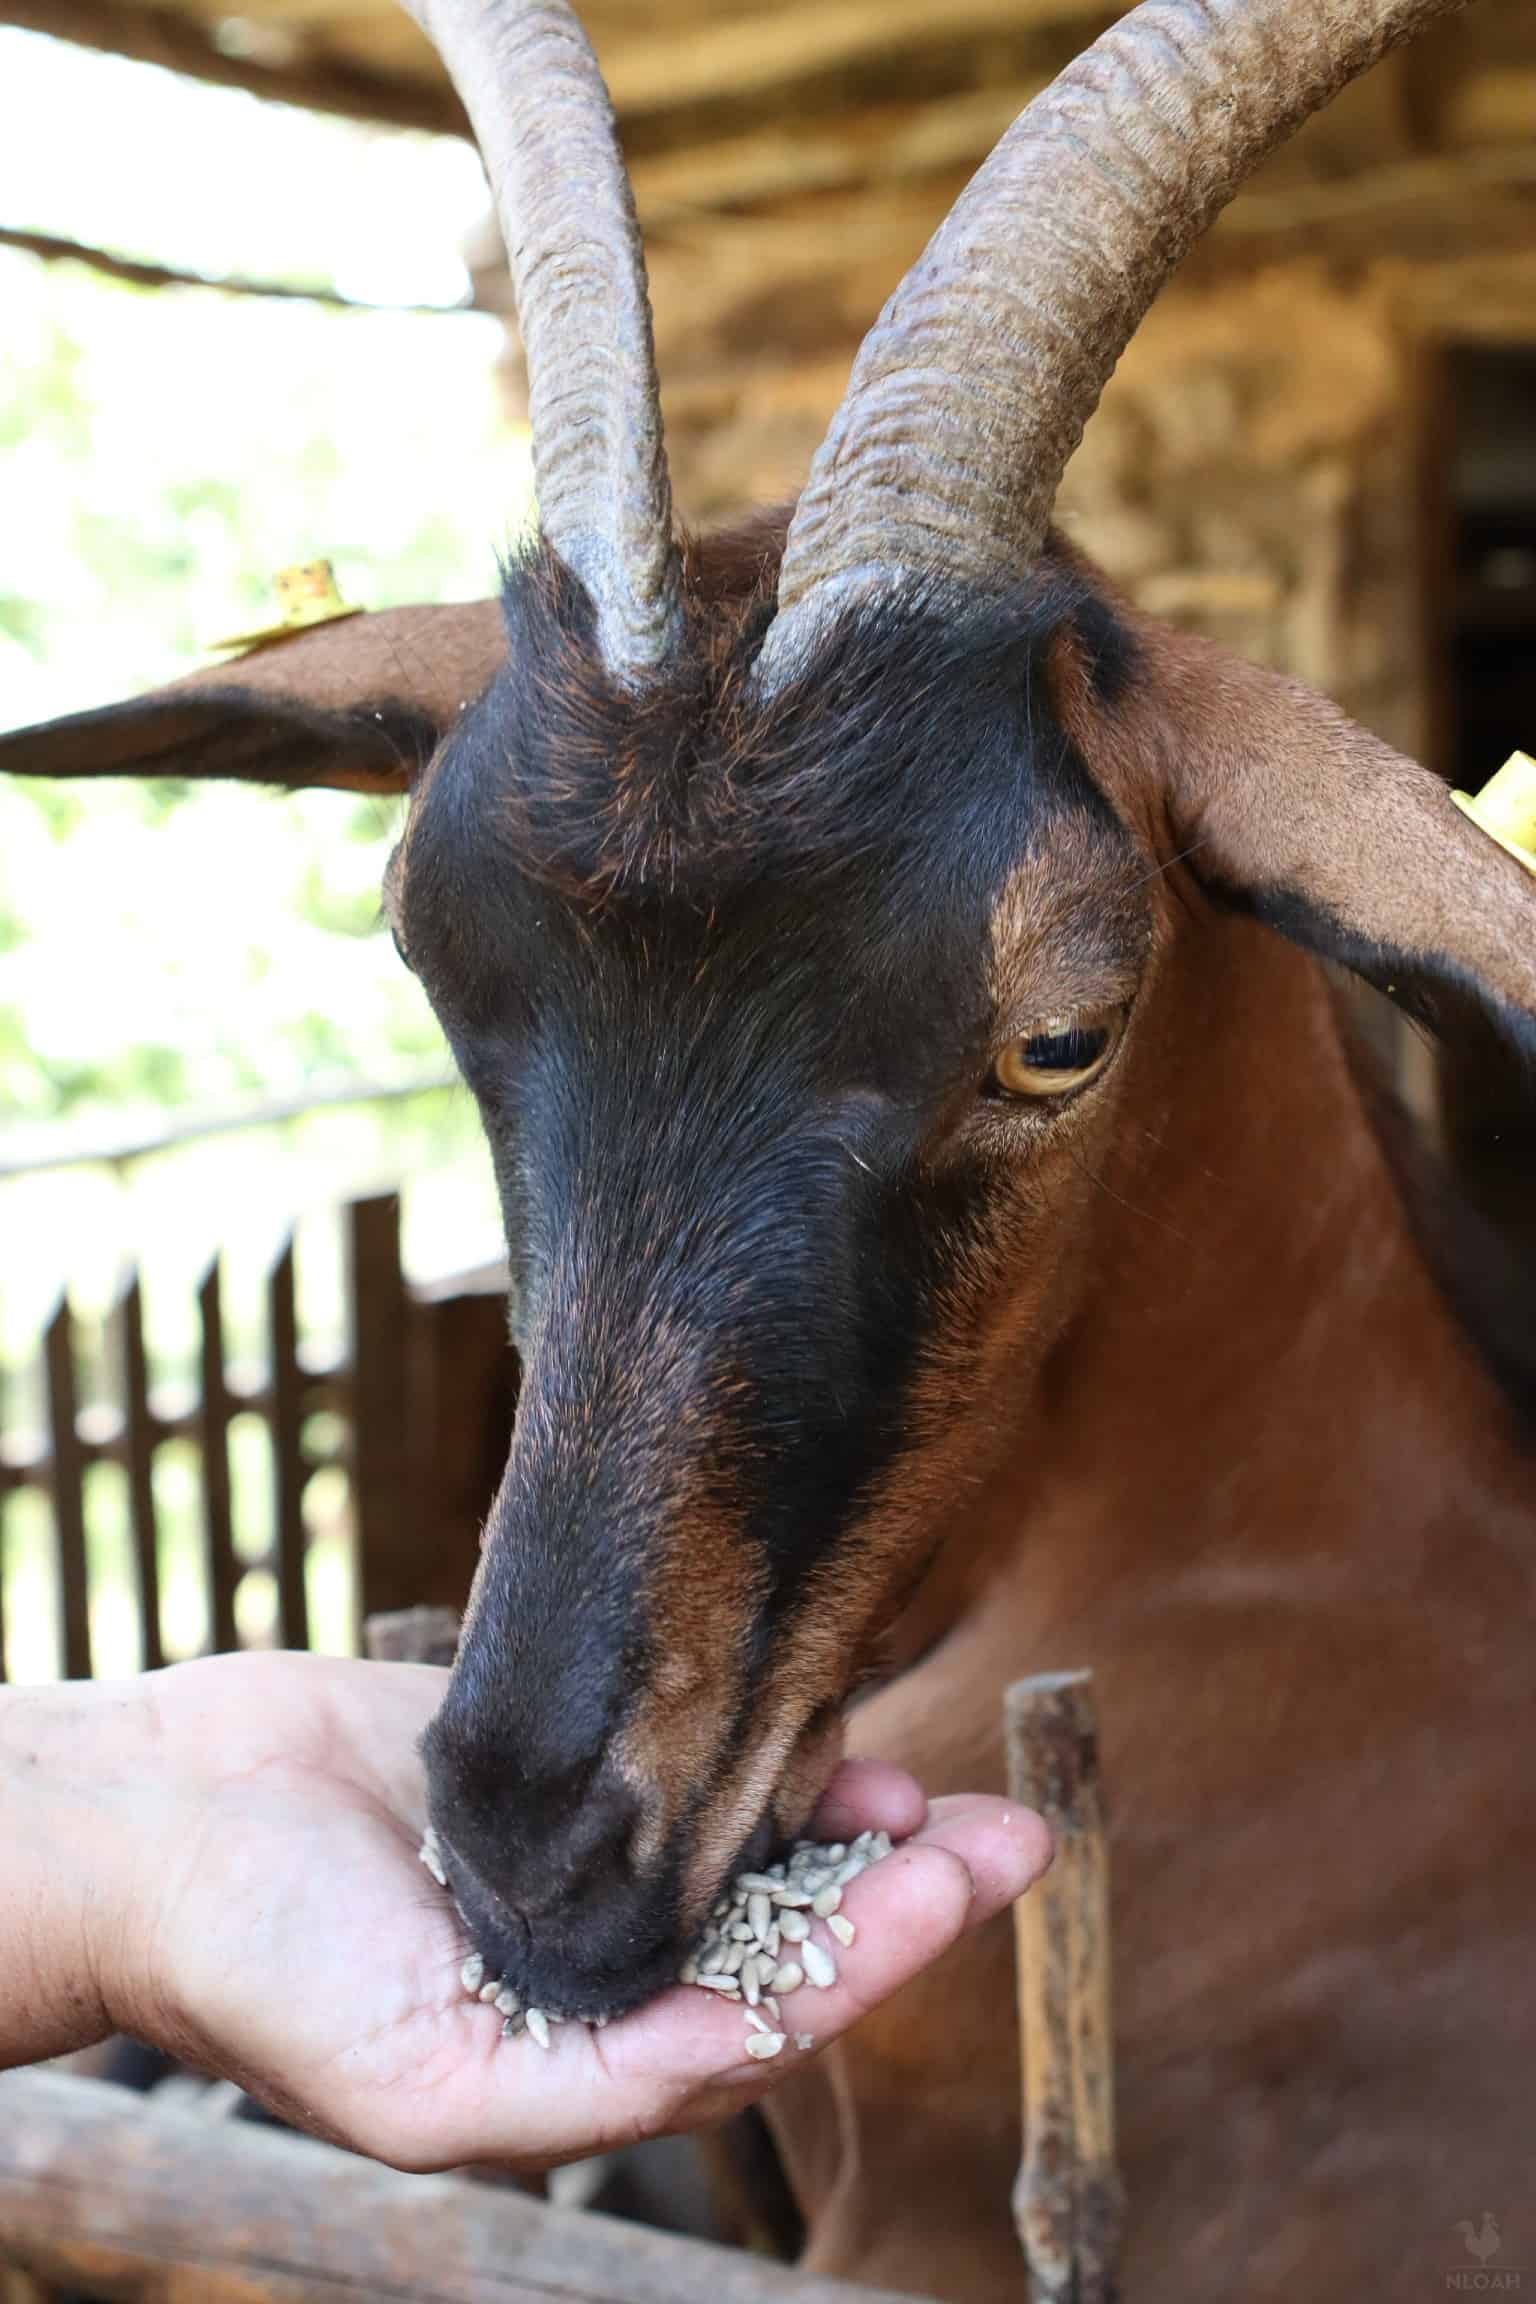 a goat enjoying some sunflower seeds